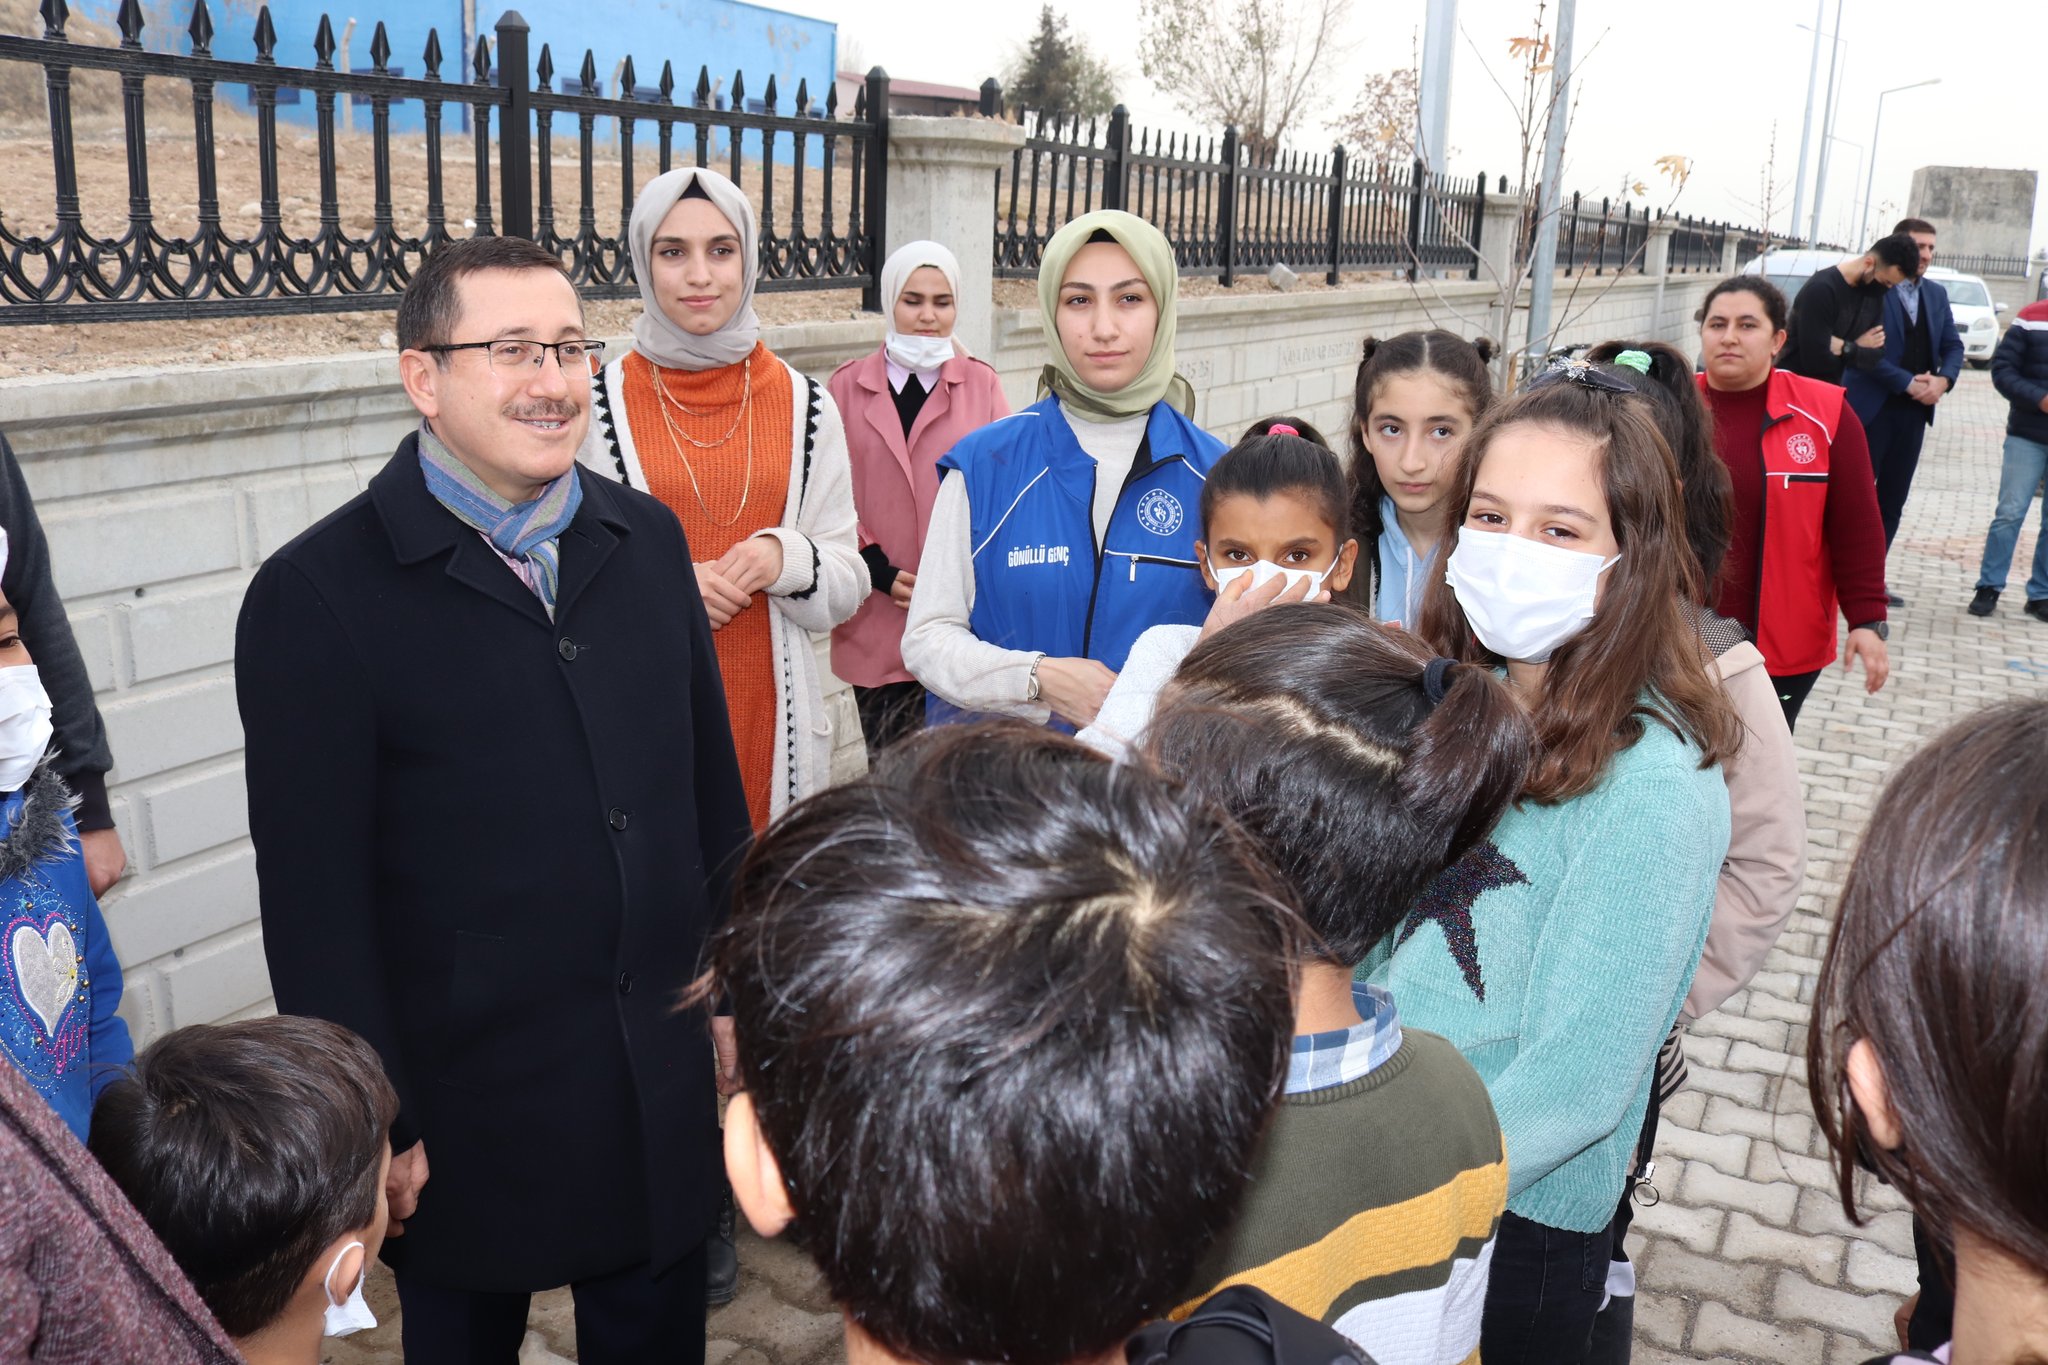 İnönü Üniversitesi rektörü Prof. Dr. Ahmet Kızılay, Melekbaba Mahallesinde düzenlenen etkinliğe katılarak burada mahalle çocukları ile bir araya geldi.